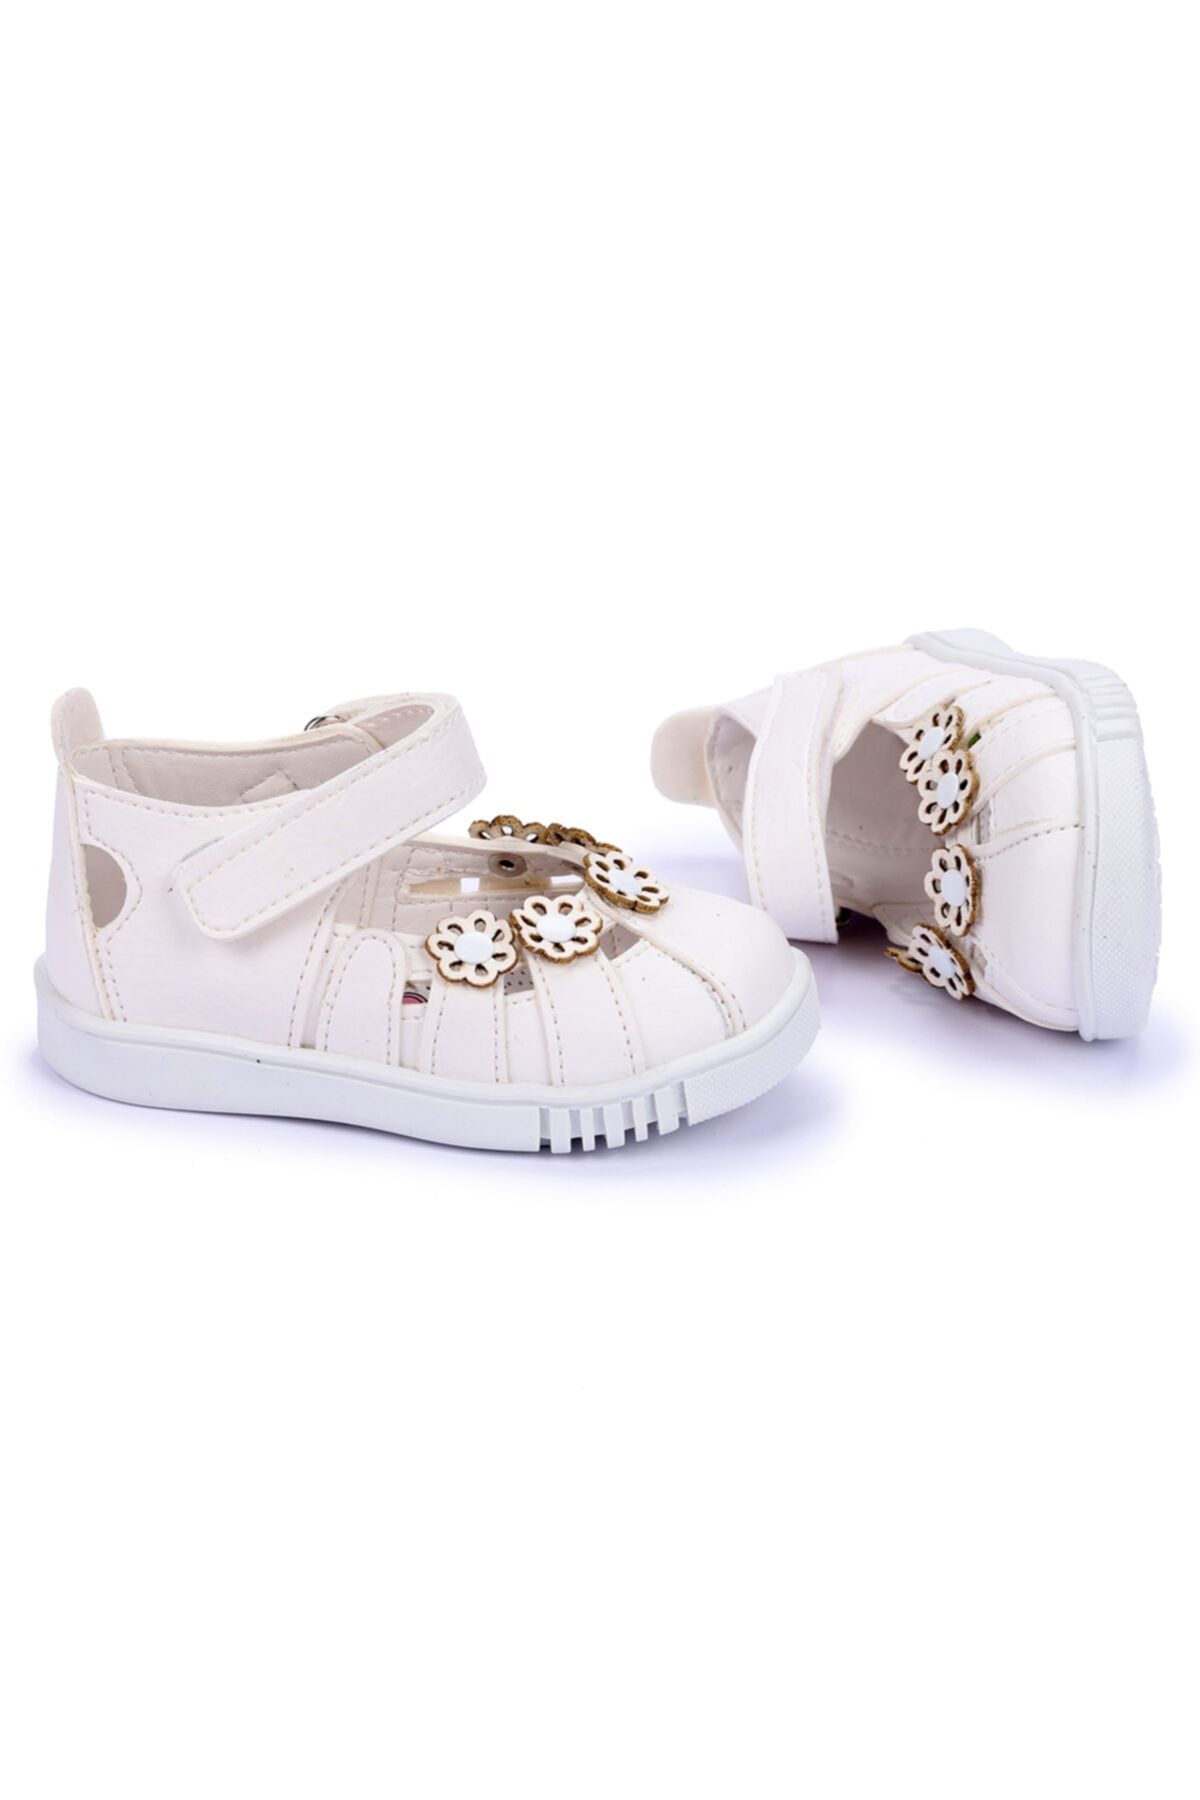 Kiko Kids Kiko Şb 750-56 Orto Pedik Kız Çocuk Ilk Adım Ayakkabı Sandalet